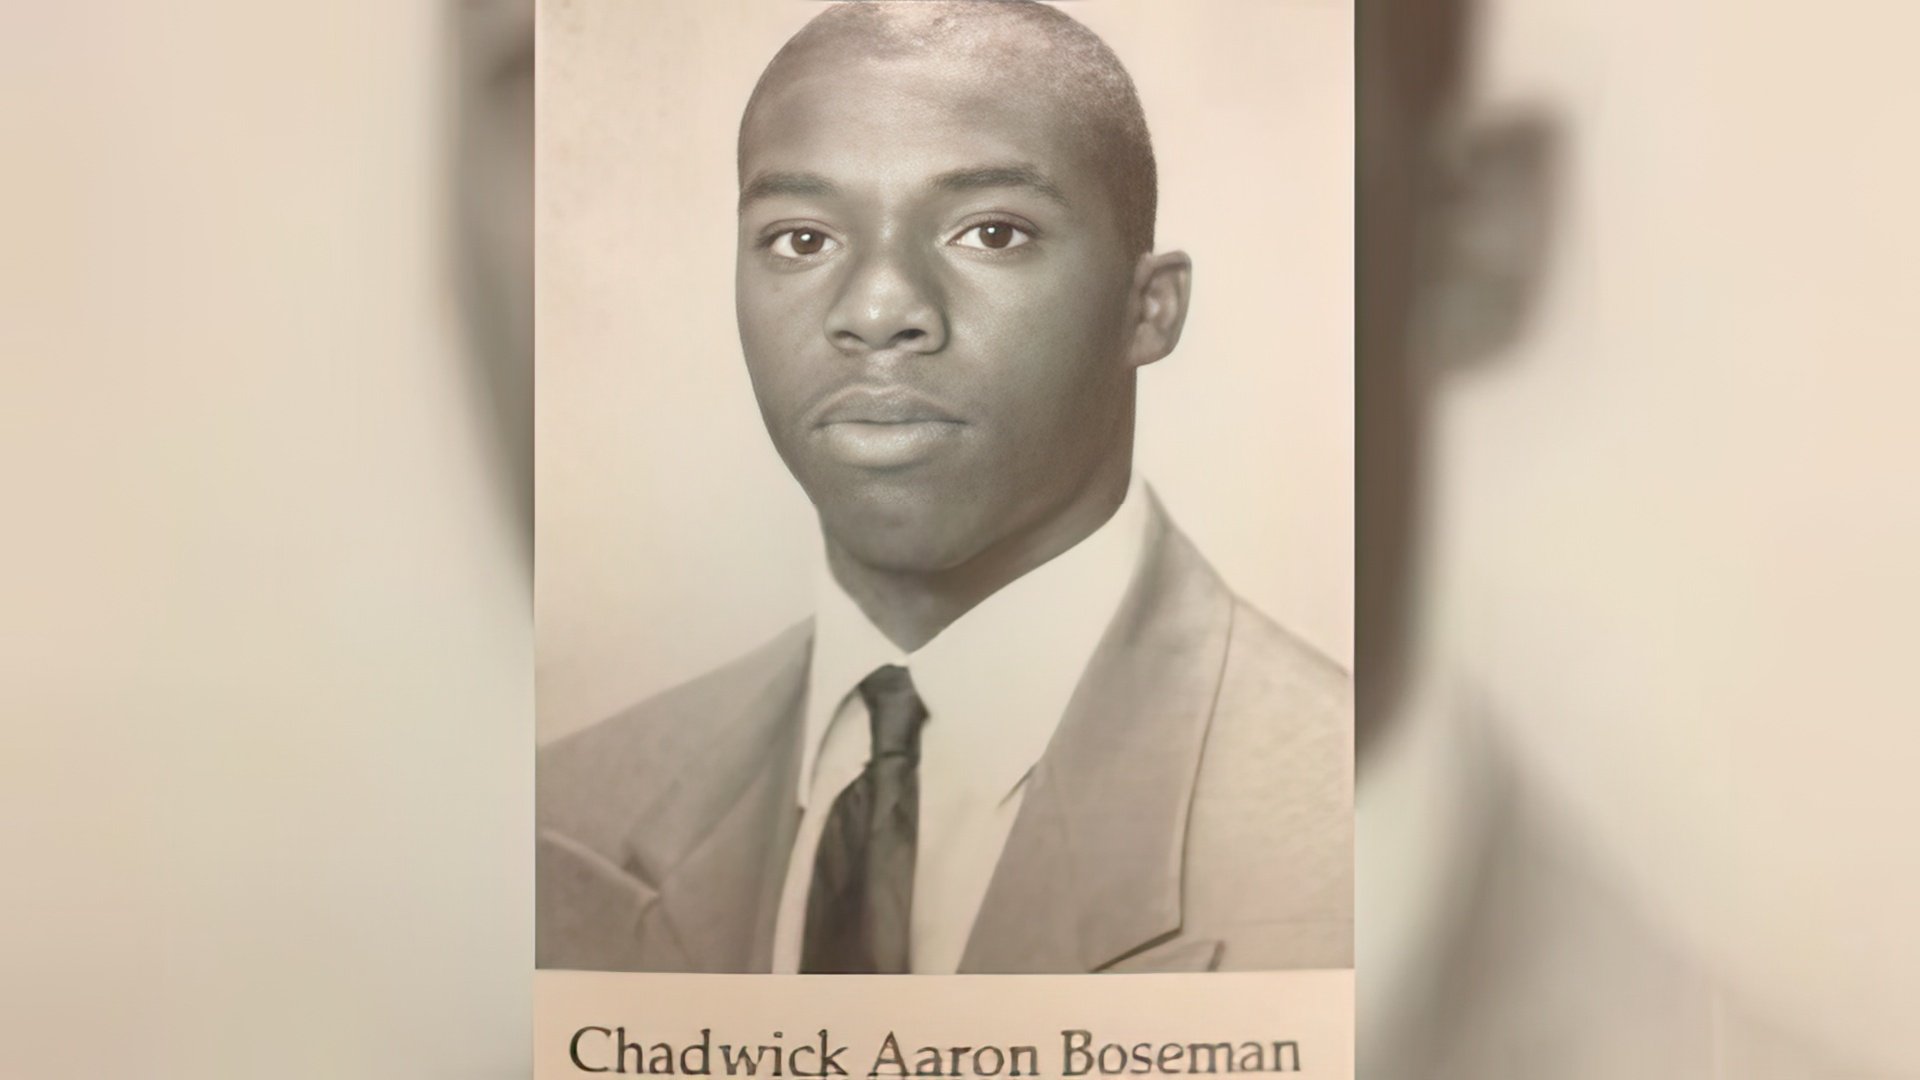 Young Chadwick Boseman